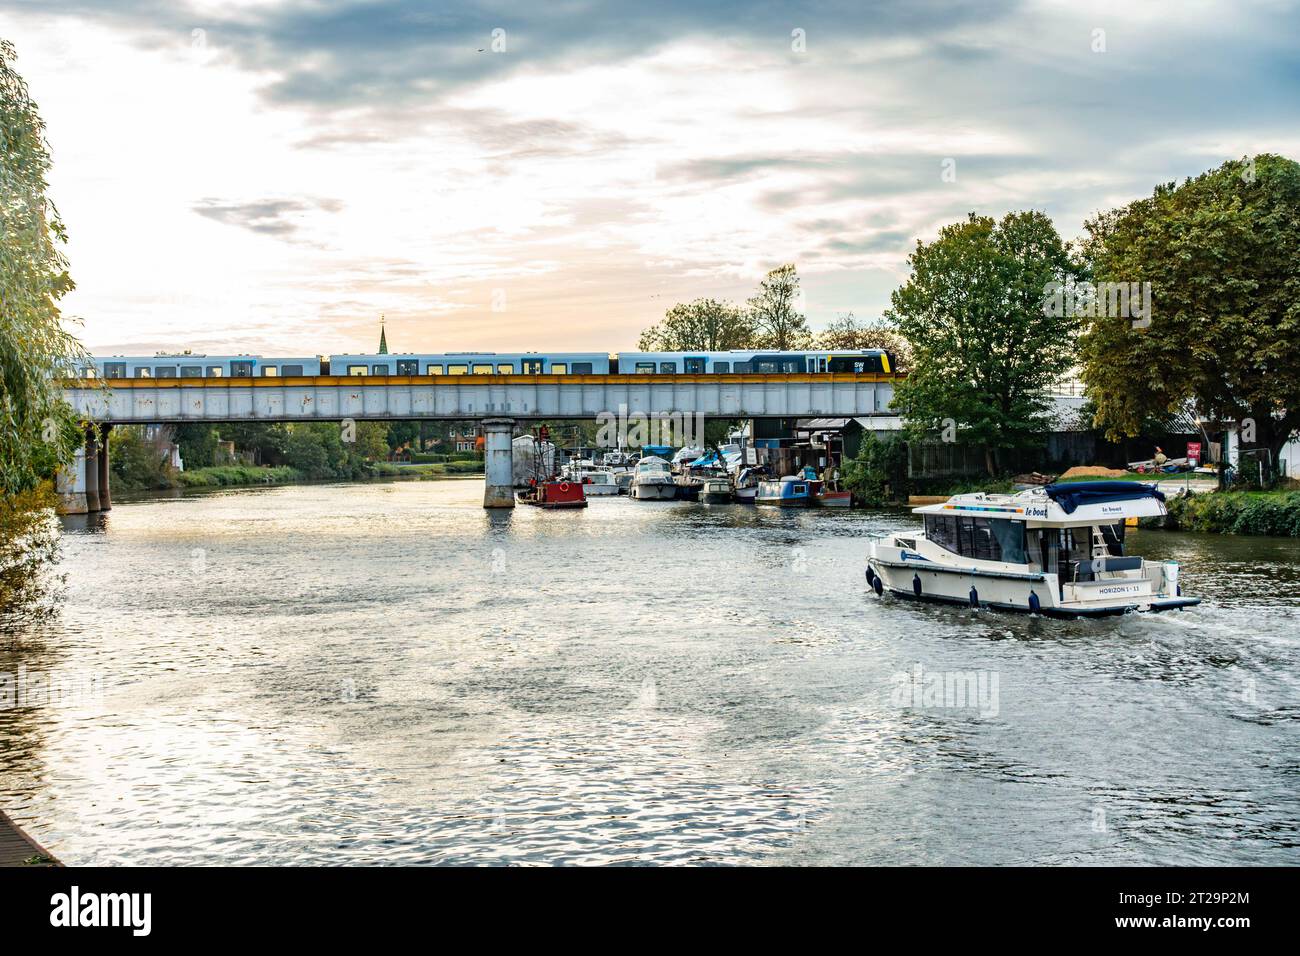 Une vue sur la Tamise à Staines-upon-Thames dans le Surrey, Royaume-Uni vers un pont ferroviaire qui enjambe la rivière. Banque D'Images